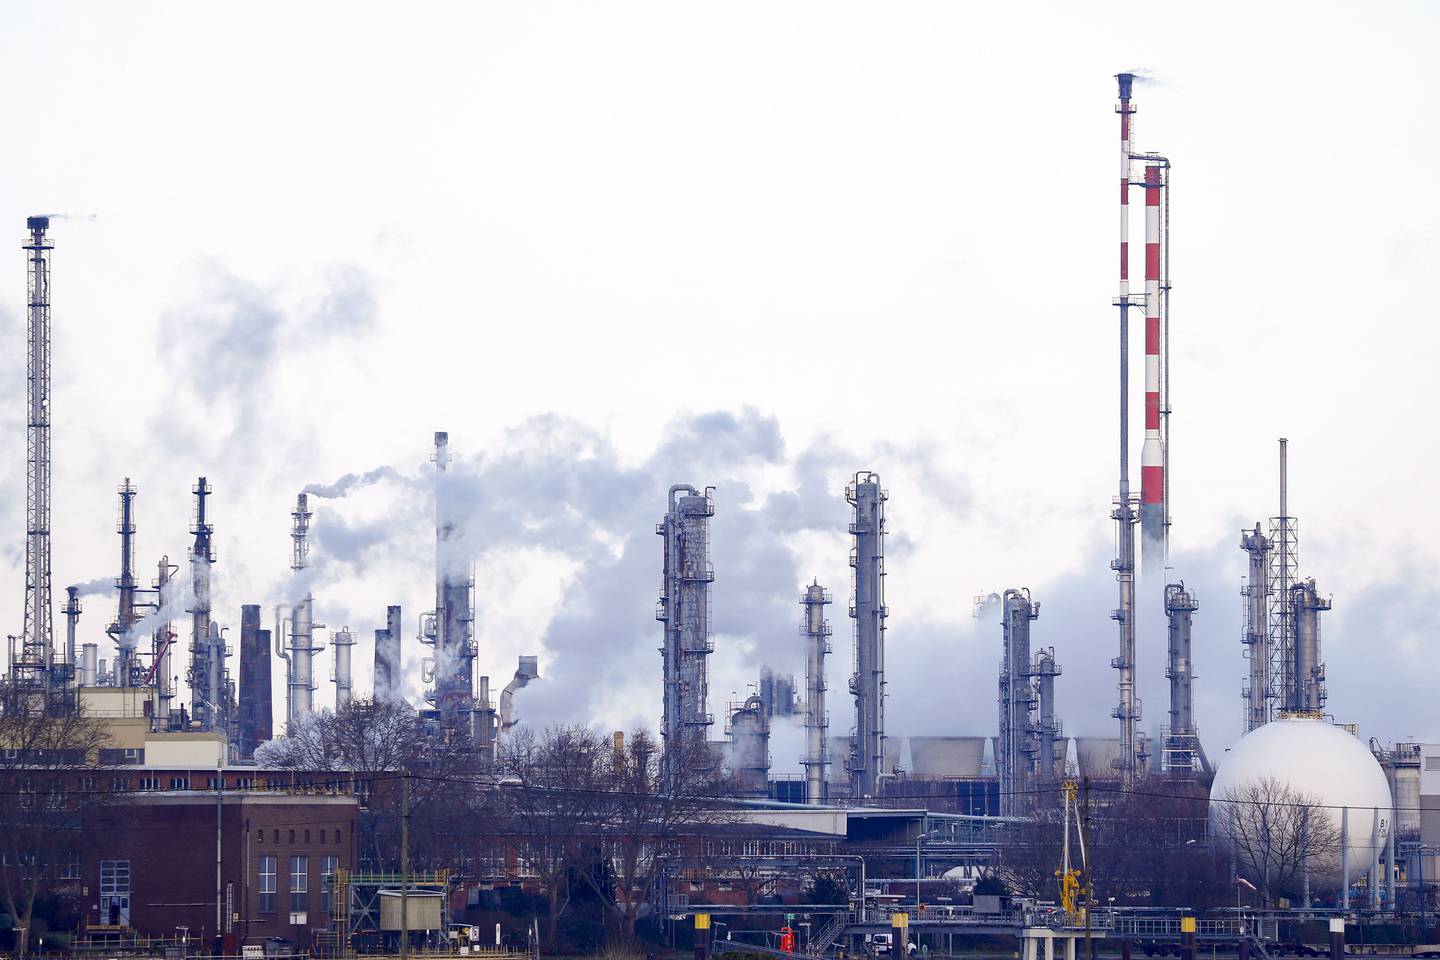 BASF, el mayor fabricante de productos químicos de Europa, podría reducir su producción debido al aumento del coste del gas, que se utiliza como materia prima en la producción y para generar electricidad.dfd